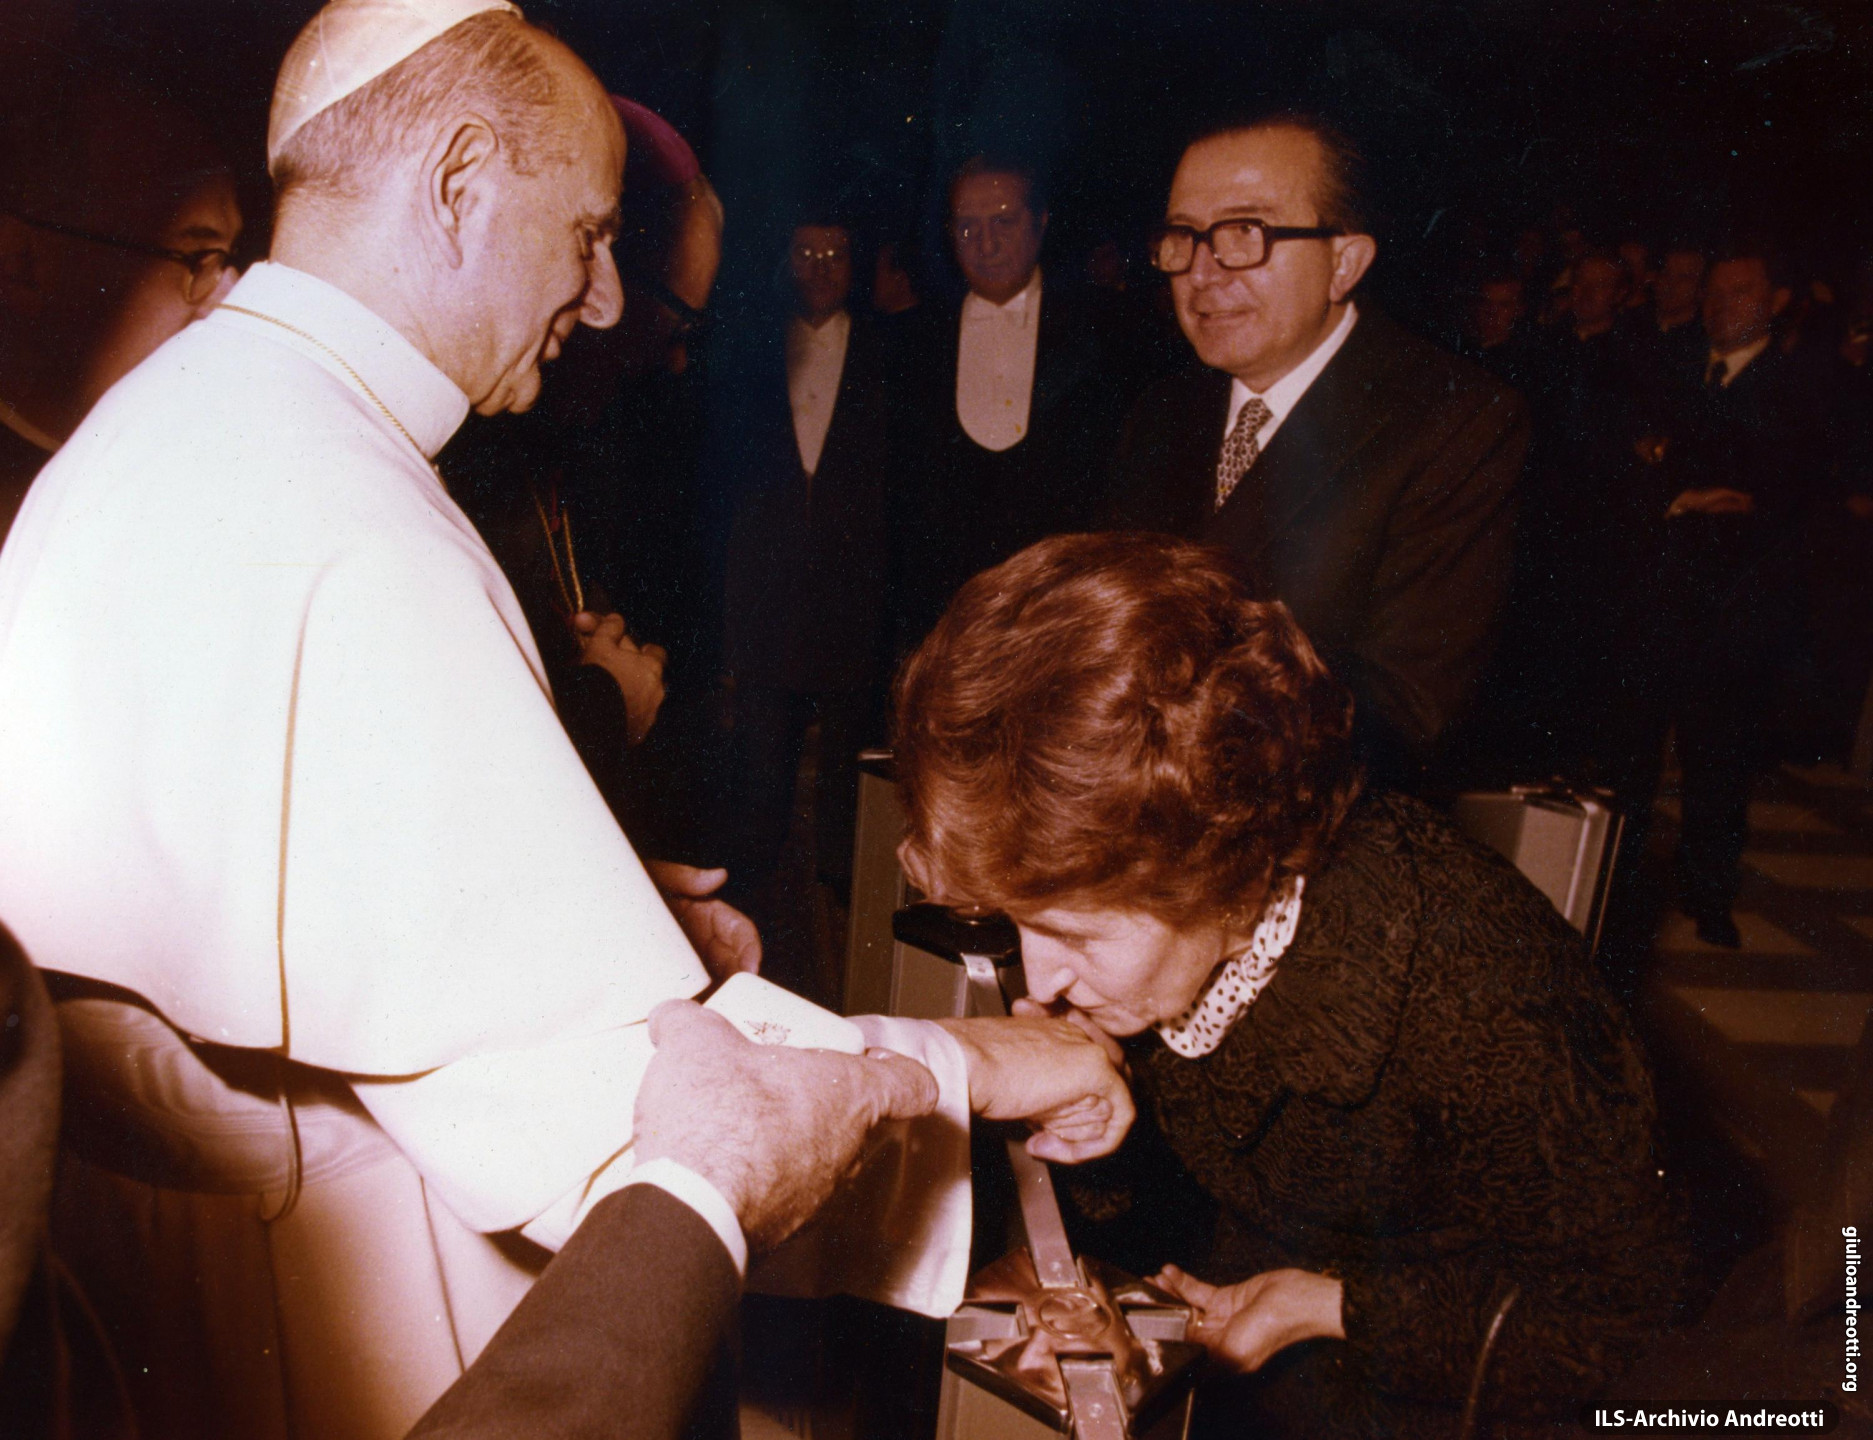 Andreotti con la moglie Livia incontrano Paolo VI.